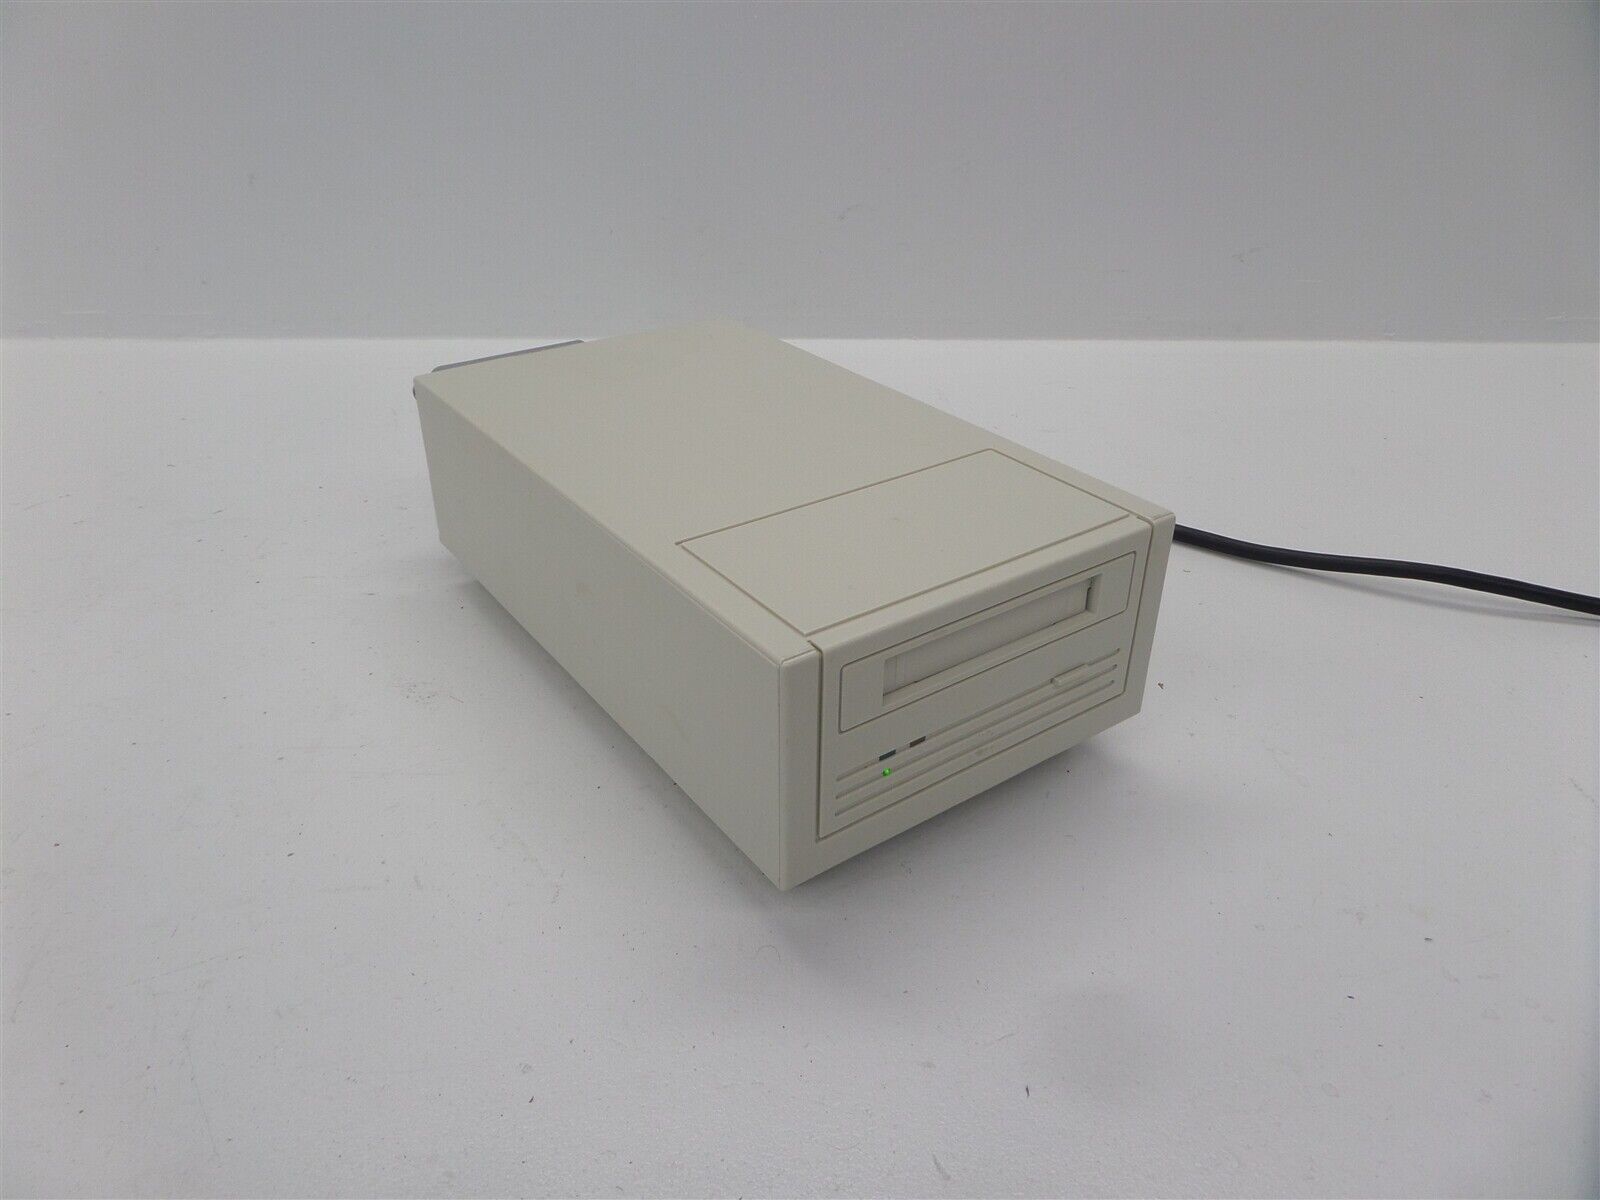 Vintage Archive Corp. 4350XT External SCSI DAT Tape Drive